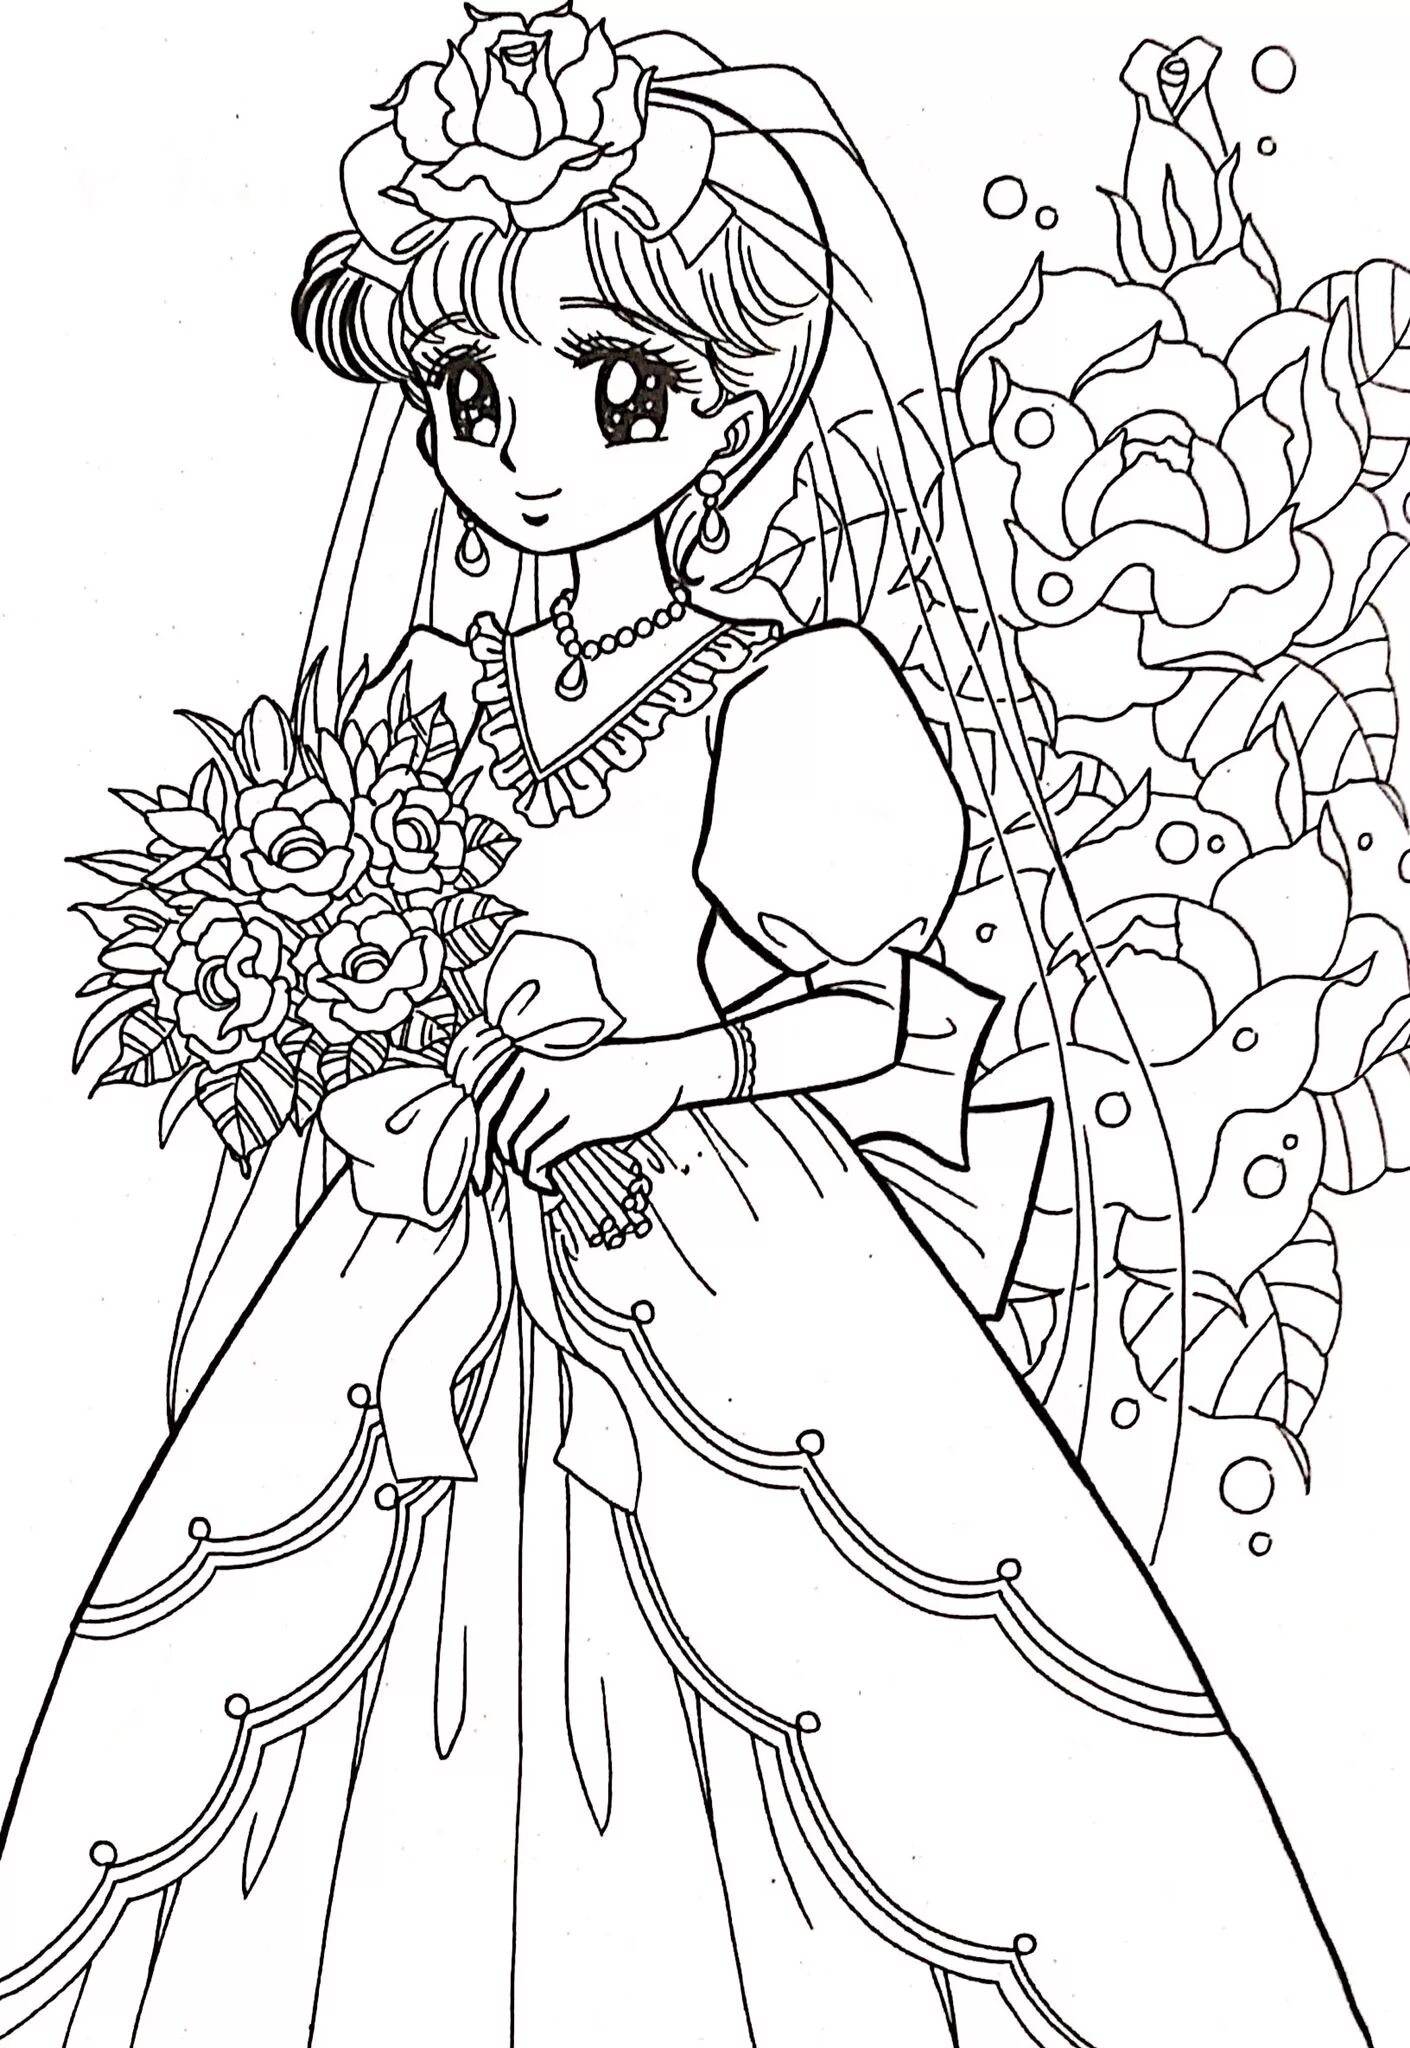 Charming coloring anime princess